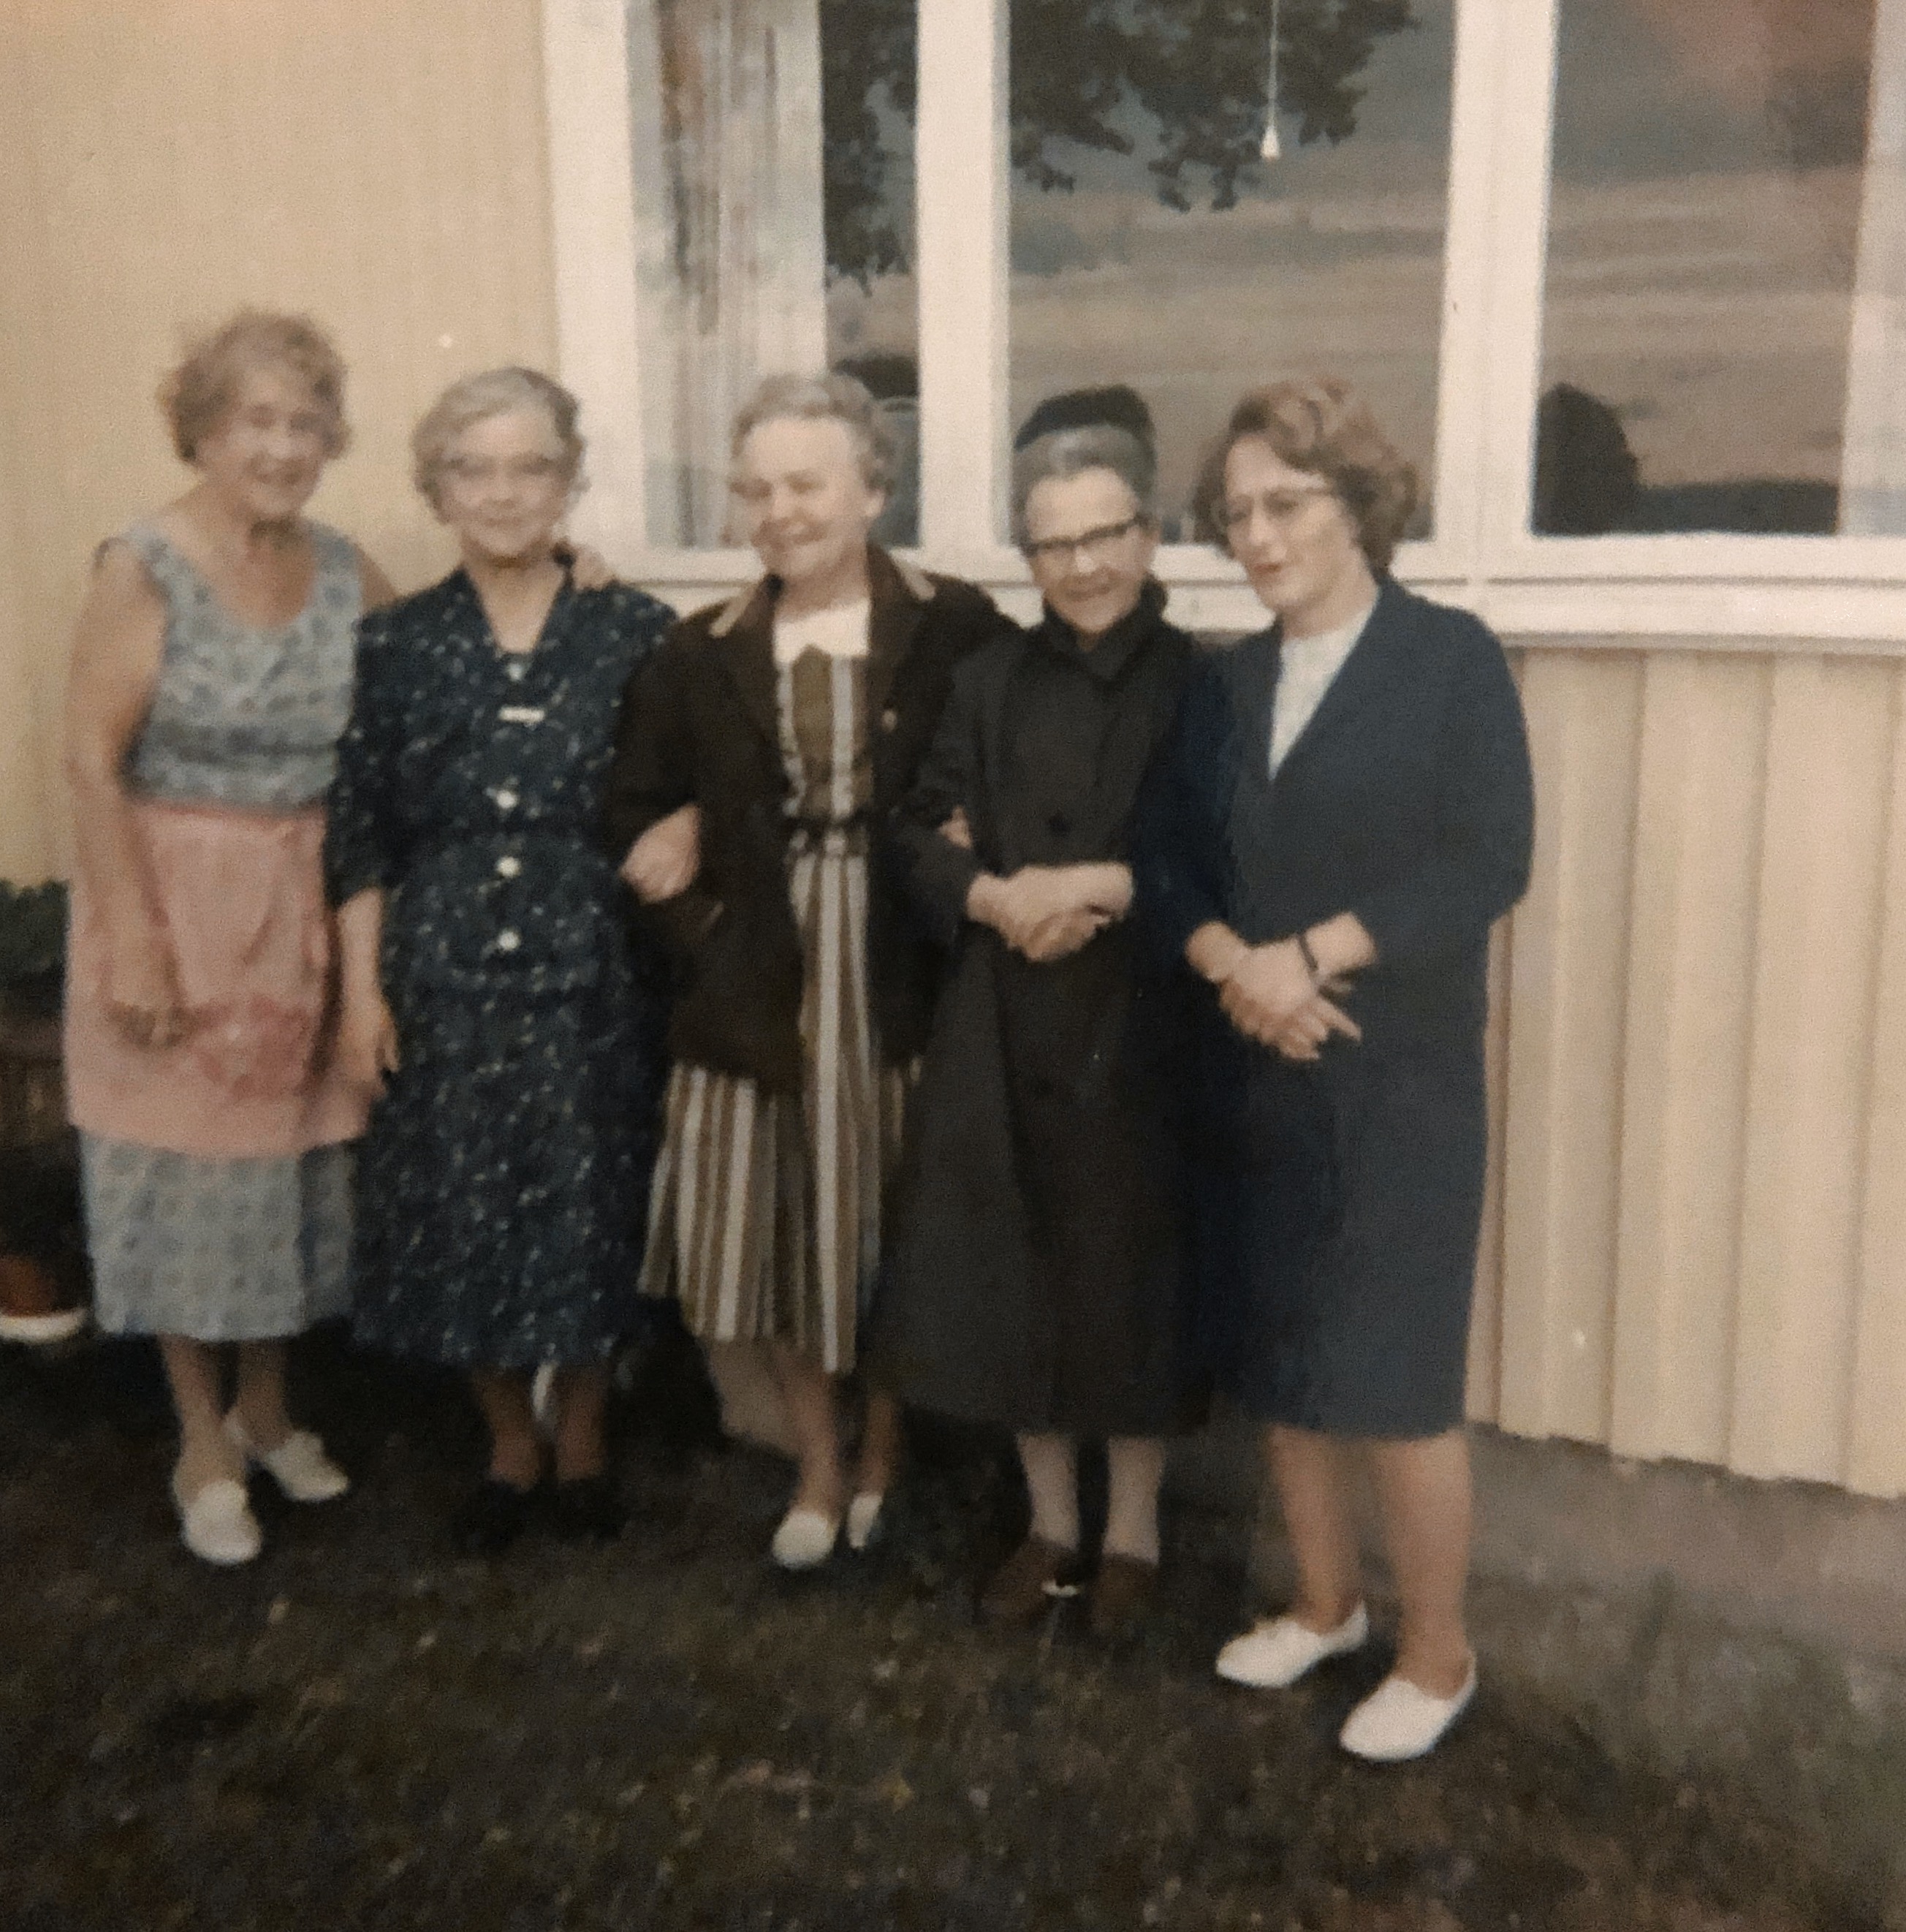 Fra besøket i Orhagan i august 1966.
1. I fra venstre er Flatla
3. I fra venstre er tanta Marie Horgen